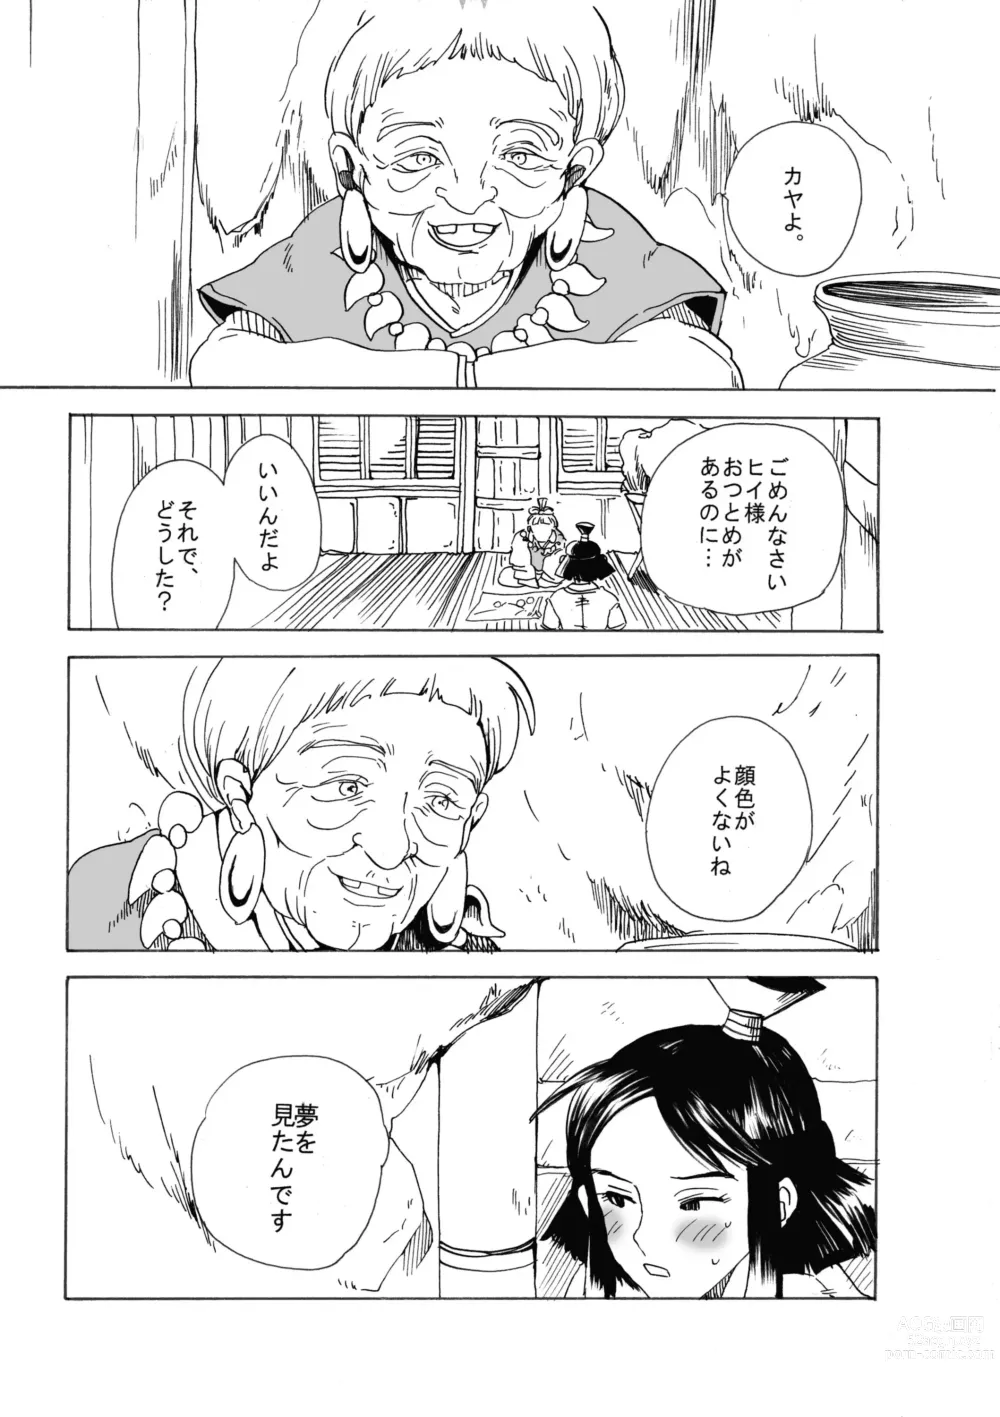 Page 5 of doujinshi Ashitaka no Mori